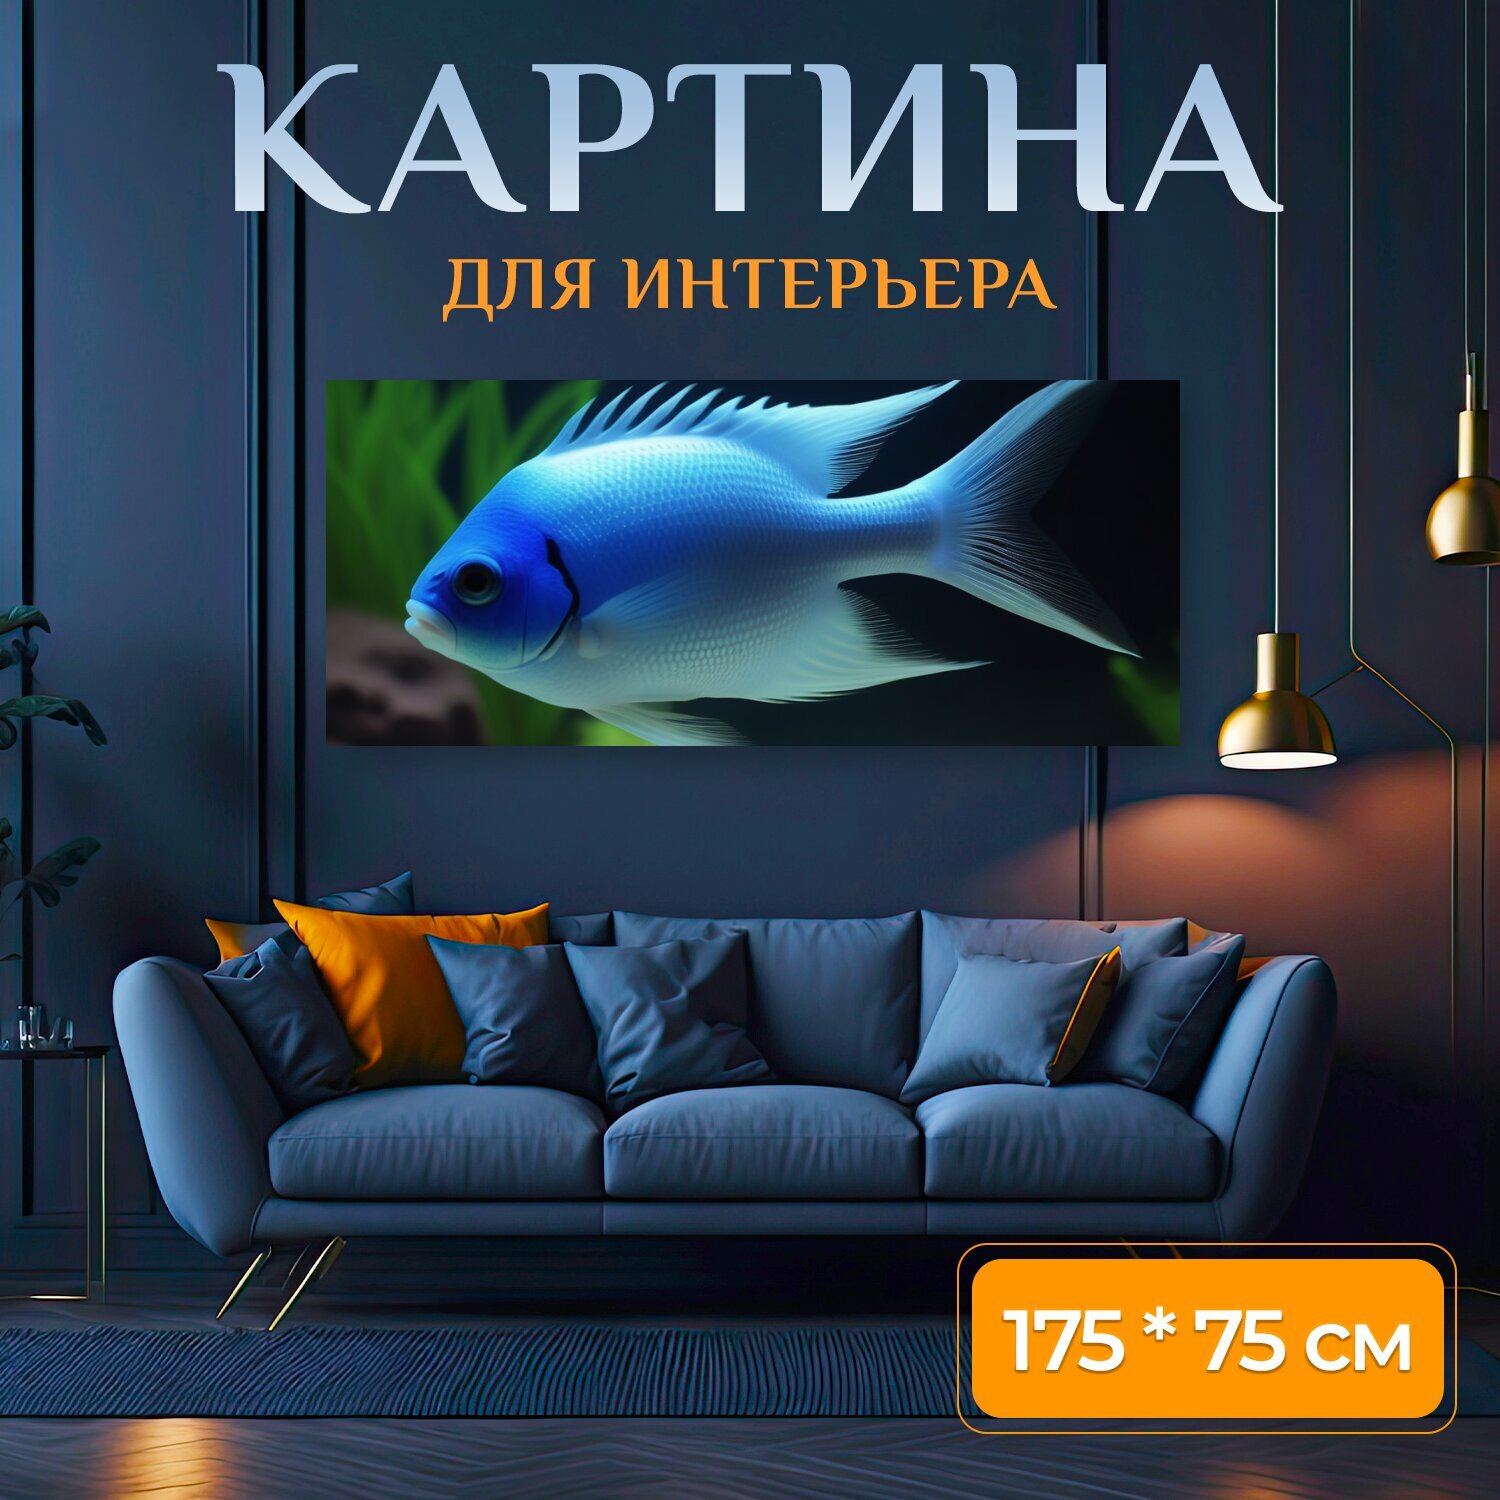 Картина на холсте любителям природы "Животные, аквариумные рыбки, в аквариуме" на подрамнике 175х75 см. для интерьера